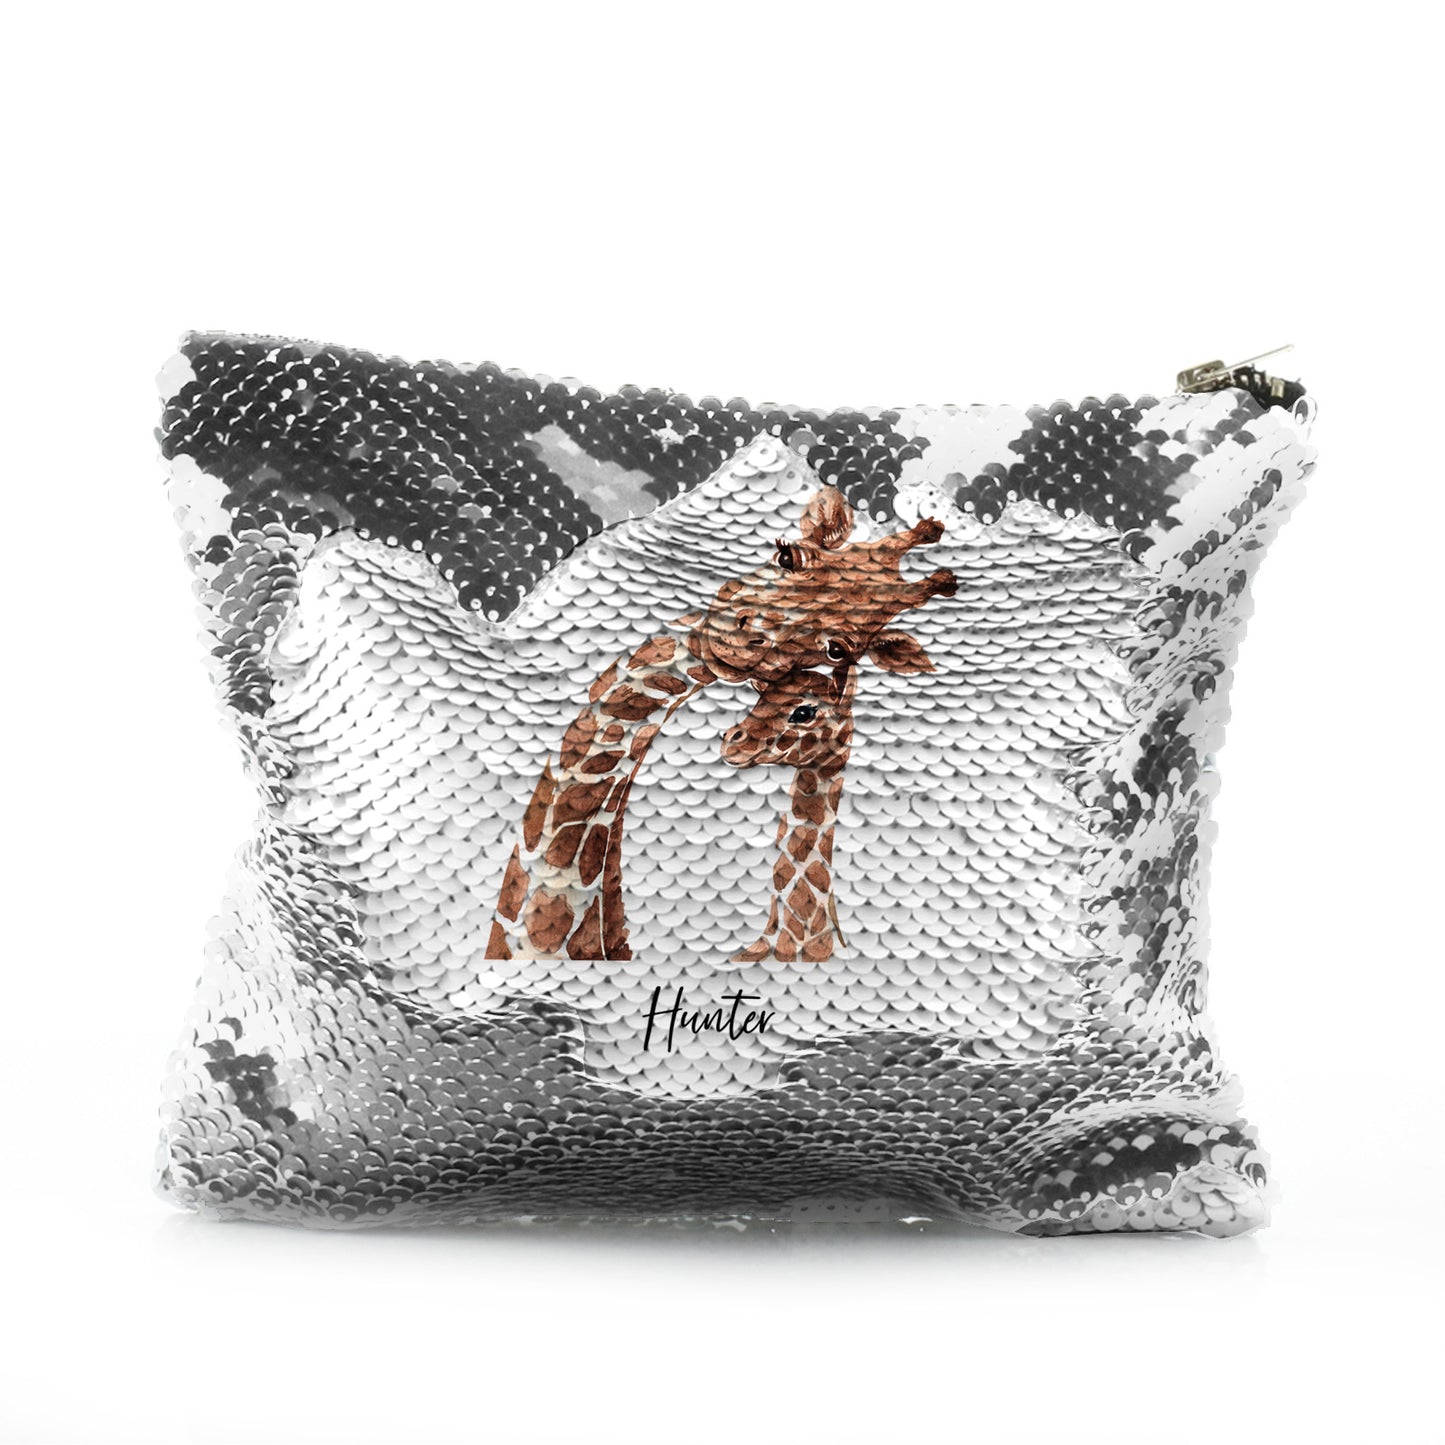 Personalisierte Pailletten-Reißverschlusstasche mit Begrüßungstext und entspannenden Mama- und Baby-Giraffen